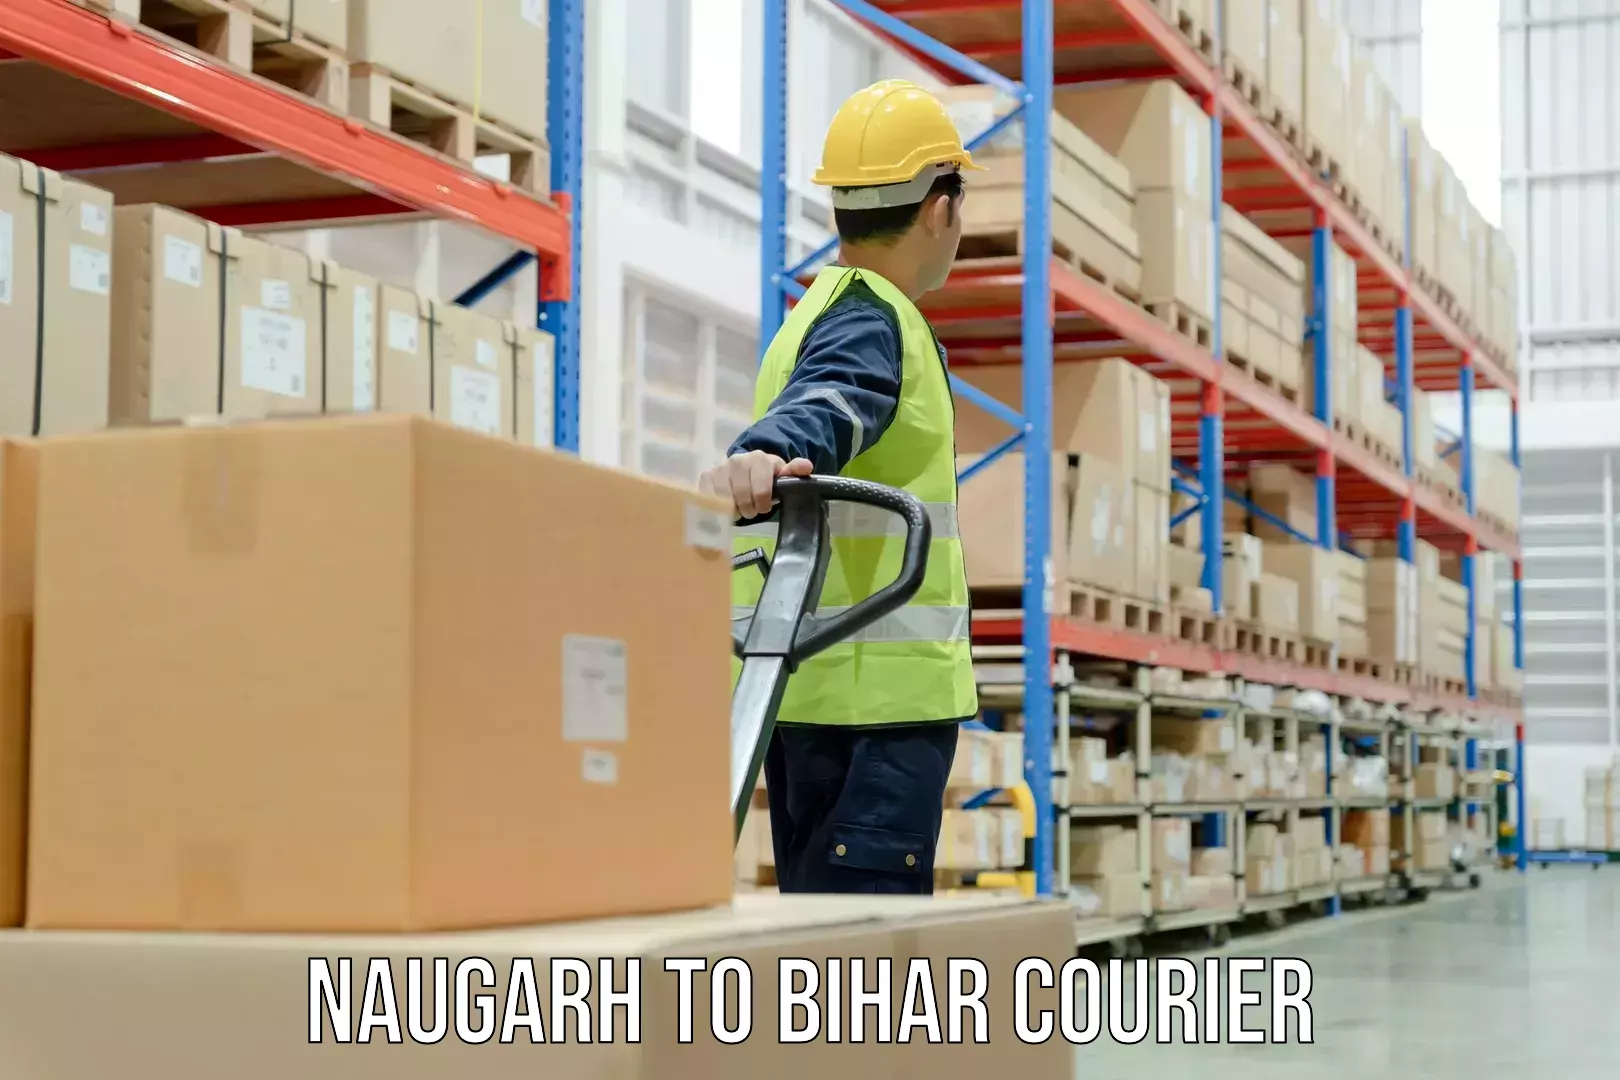 Courier app Naugarh to Bihar